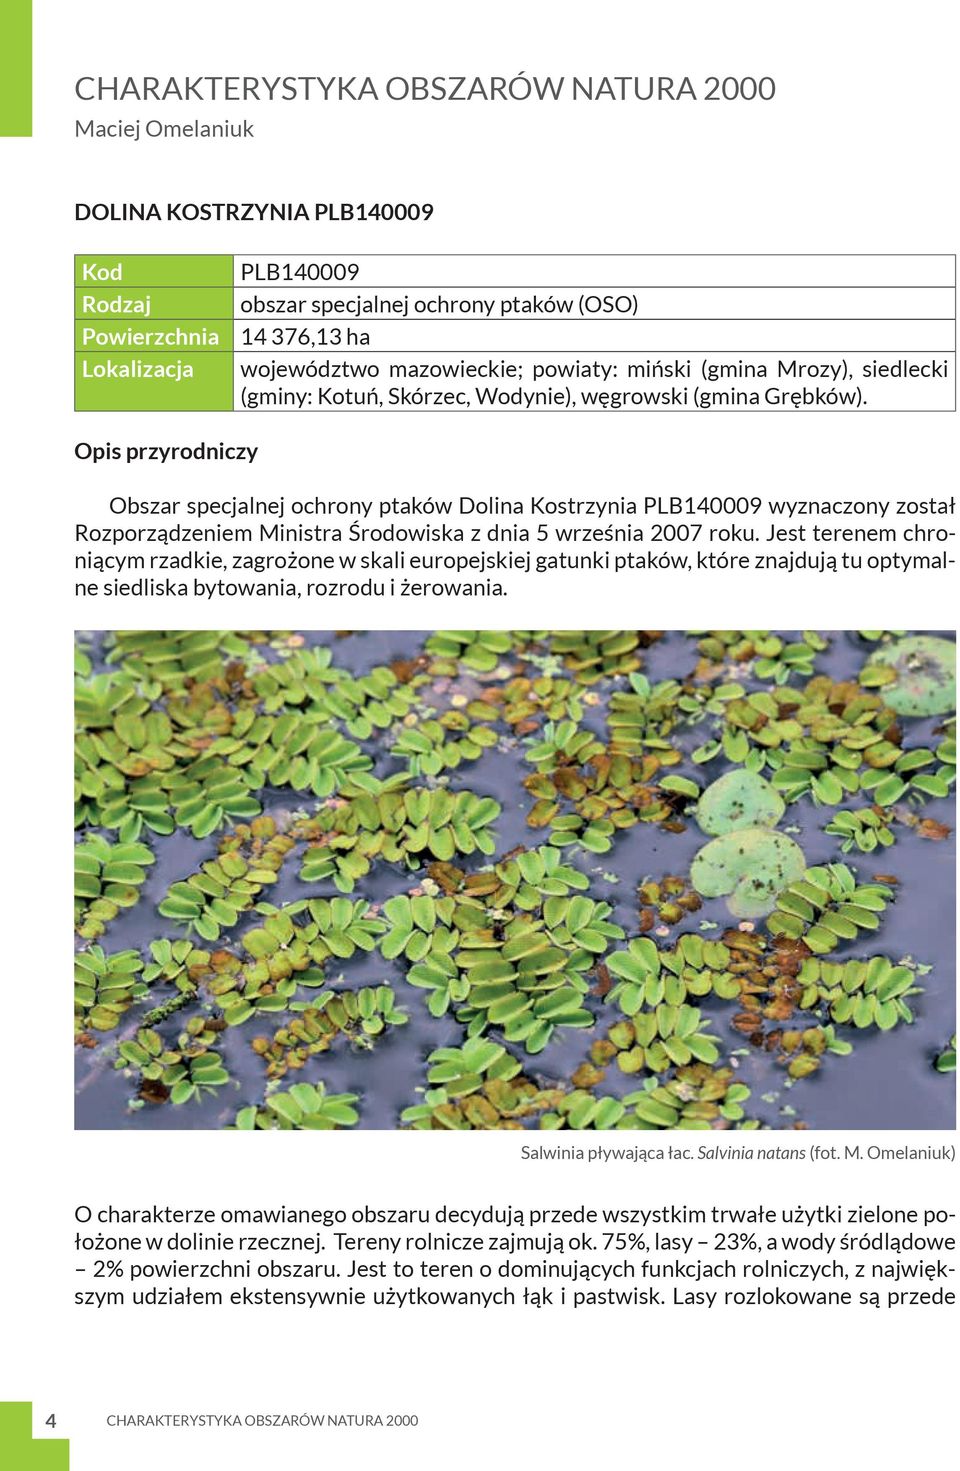 Opis przyrodniczy Obszar specjalnej ochrony ptaków Dolina Kostrzynia PLB140009 wyznaczony został Rozporządzeniem Ministra Środowiska z dnia 5 września 2007 roku.